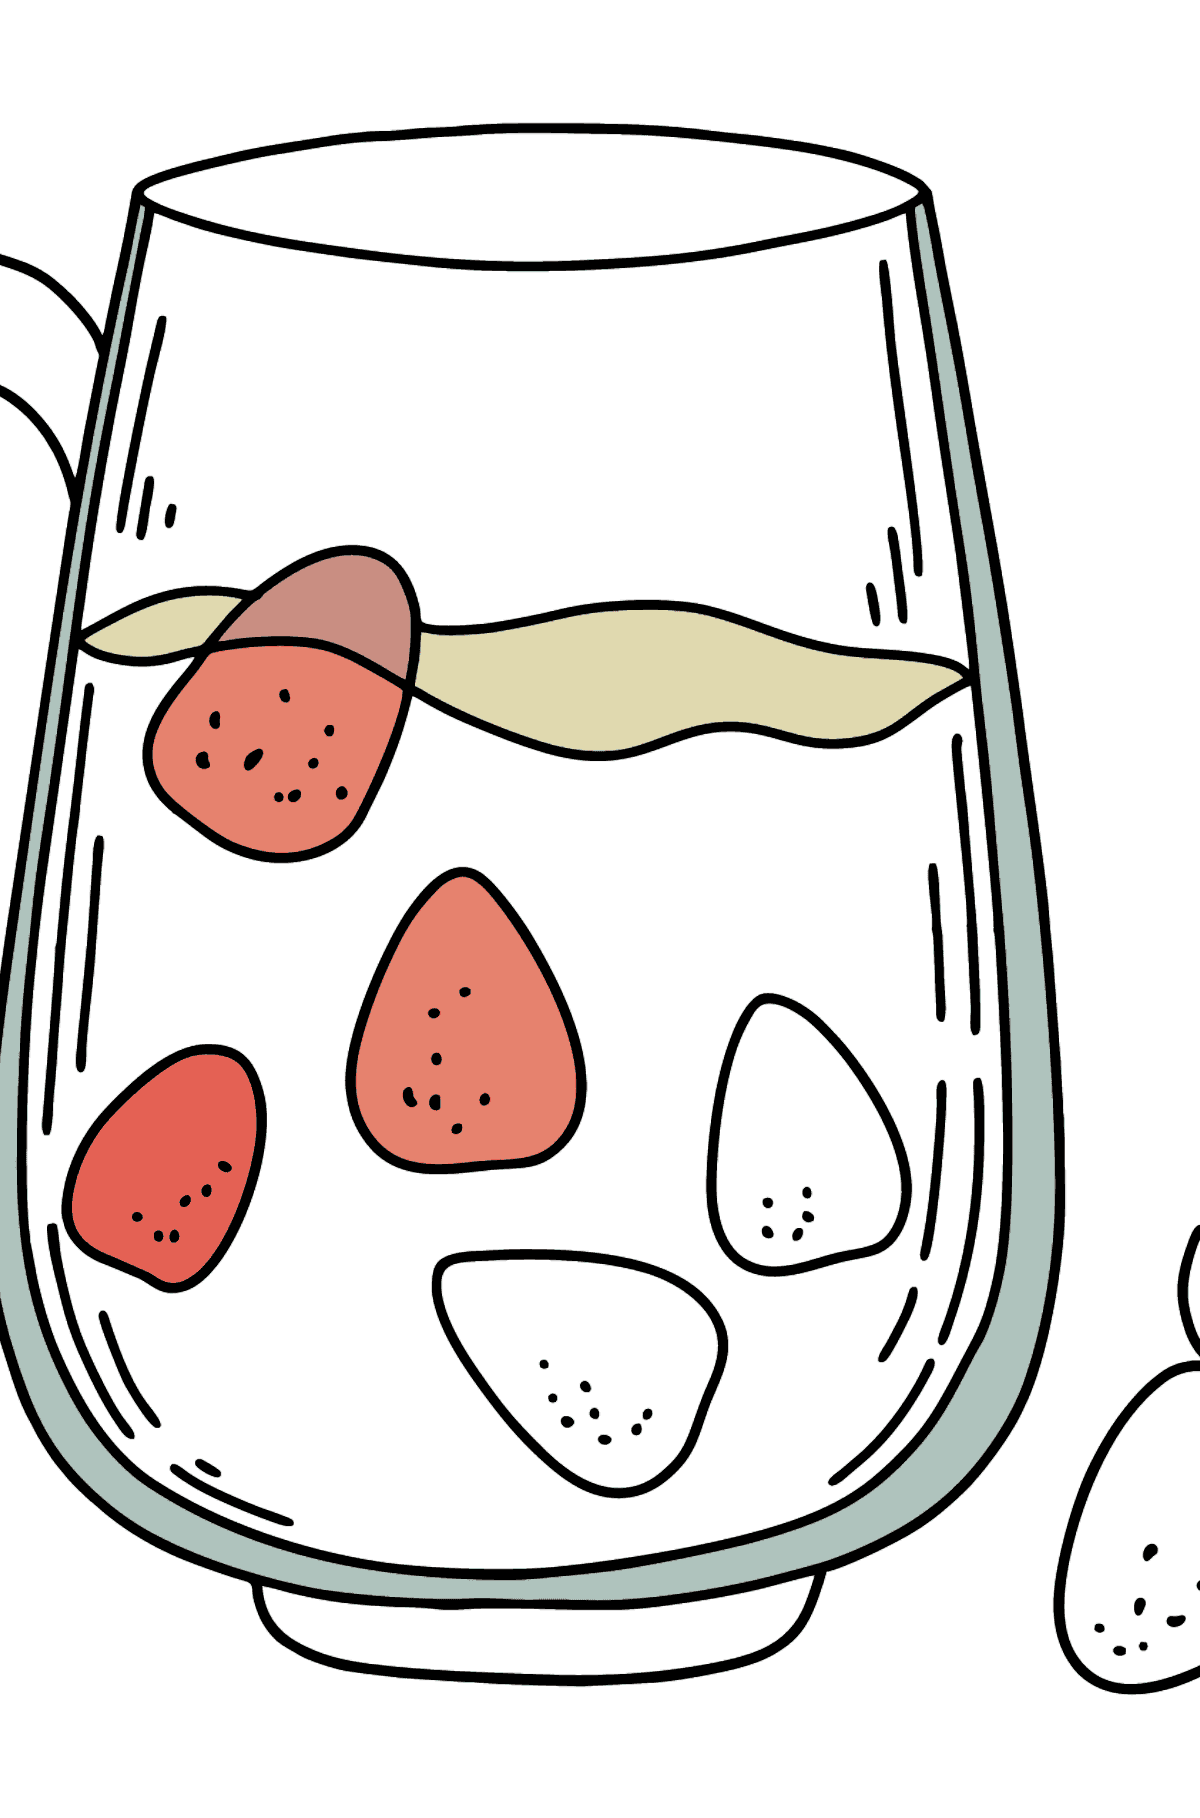 Desenho para colorir de leite com frutas - Imagens para Colorir para Crianças